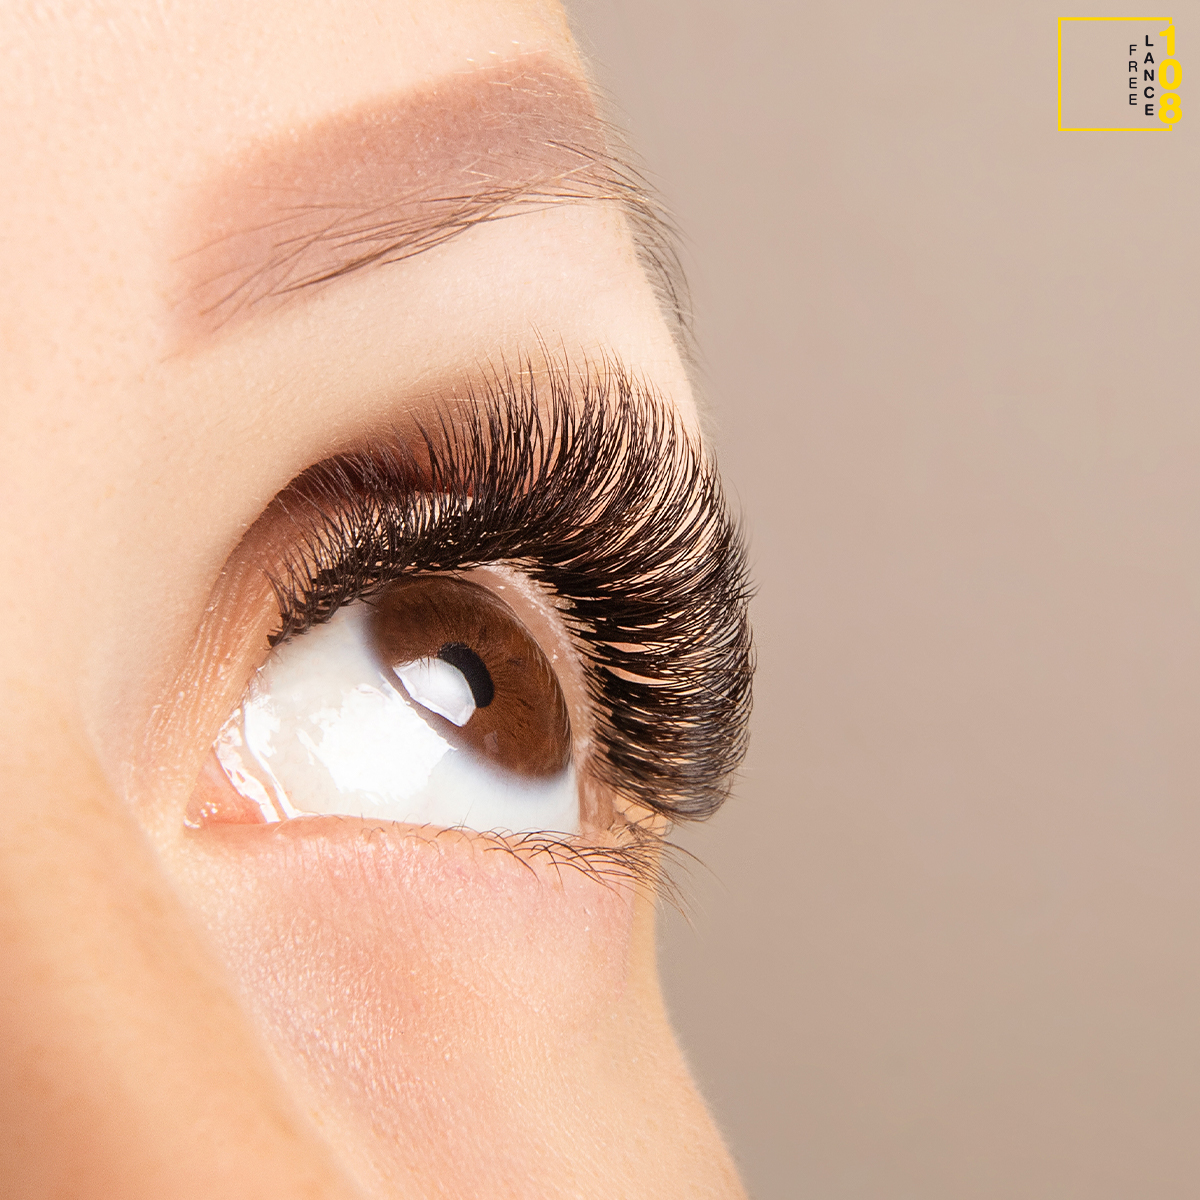 นตาปลอมอันไหนดีข้อดีข้อเสียของการต่อขนตาปลอม